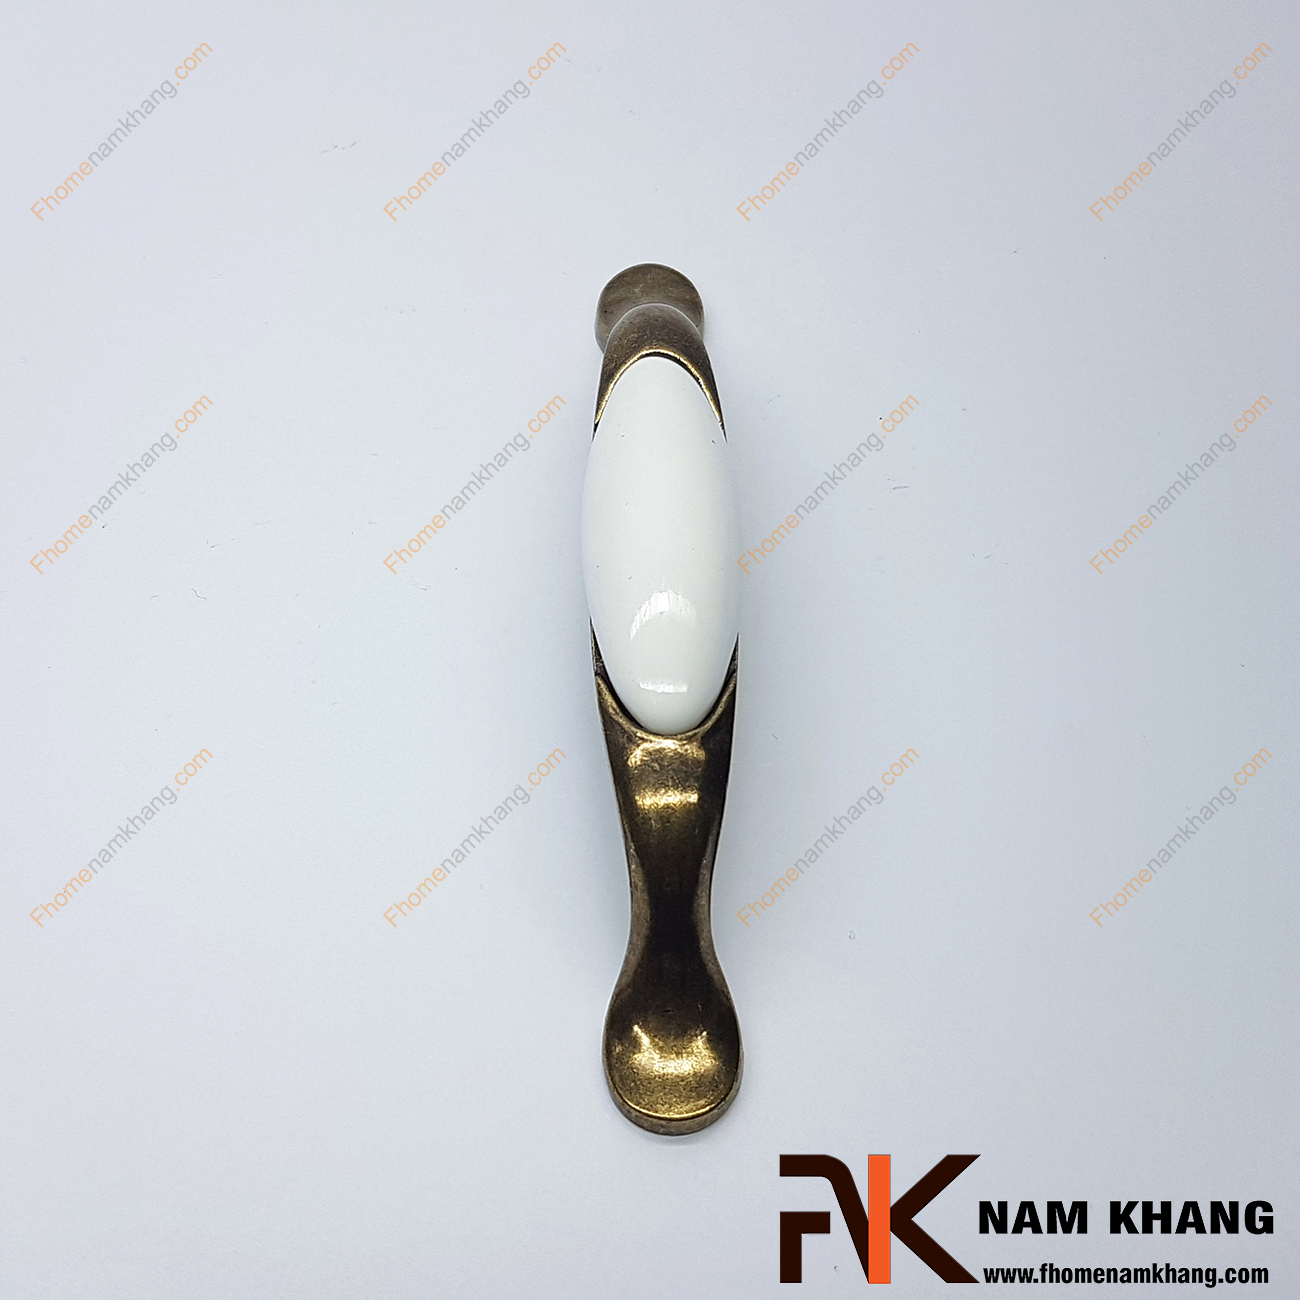 Tay nắm tủ cổ điển phối hợp sứ trắng NK360-96T thuộc dạng tay nắm kết hợp từ 2 chất liệu quen thuộc là hợp kim mạ đồng cổ và sứ cao cấp